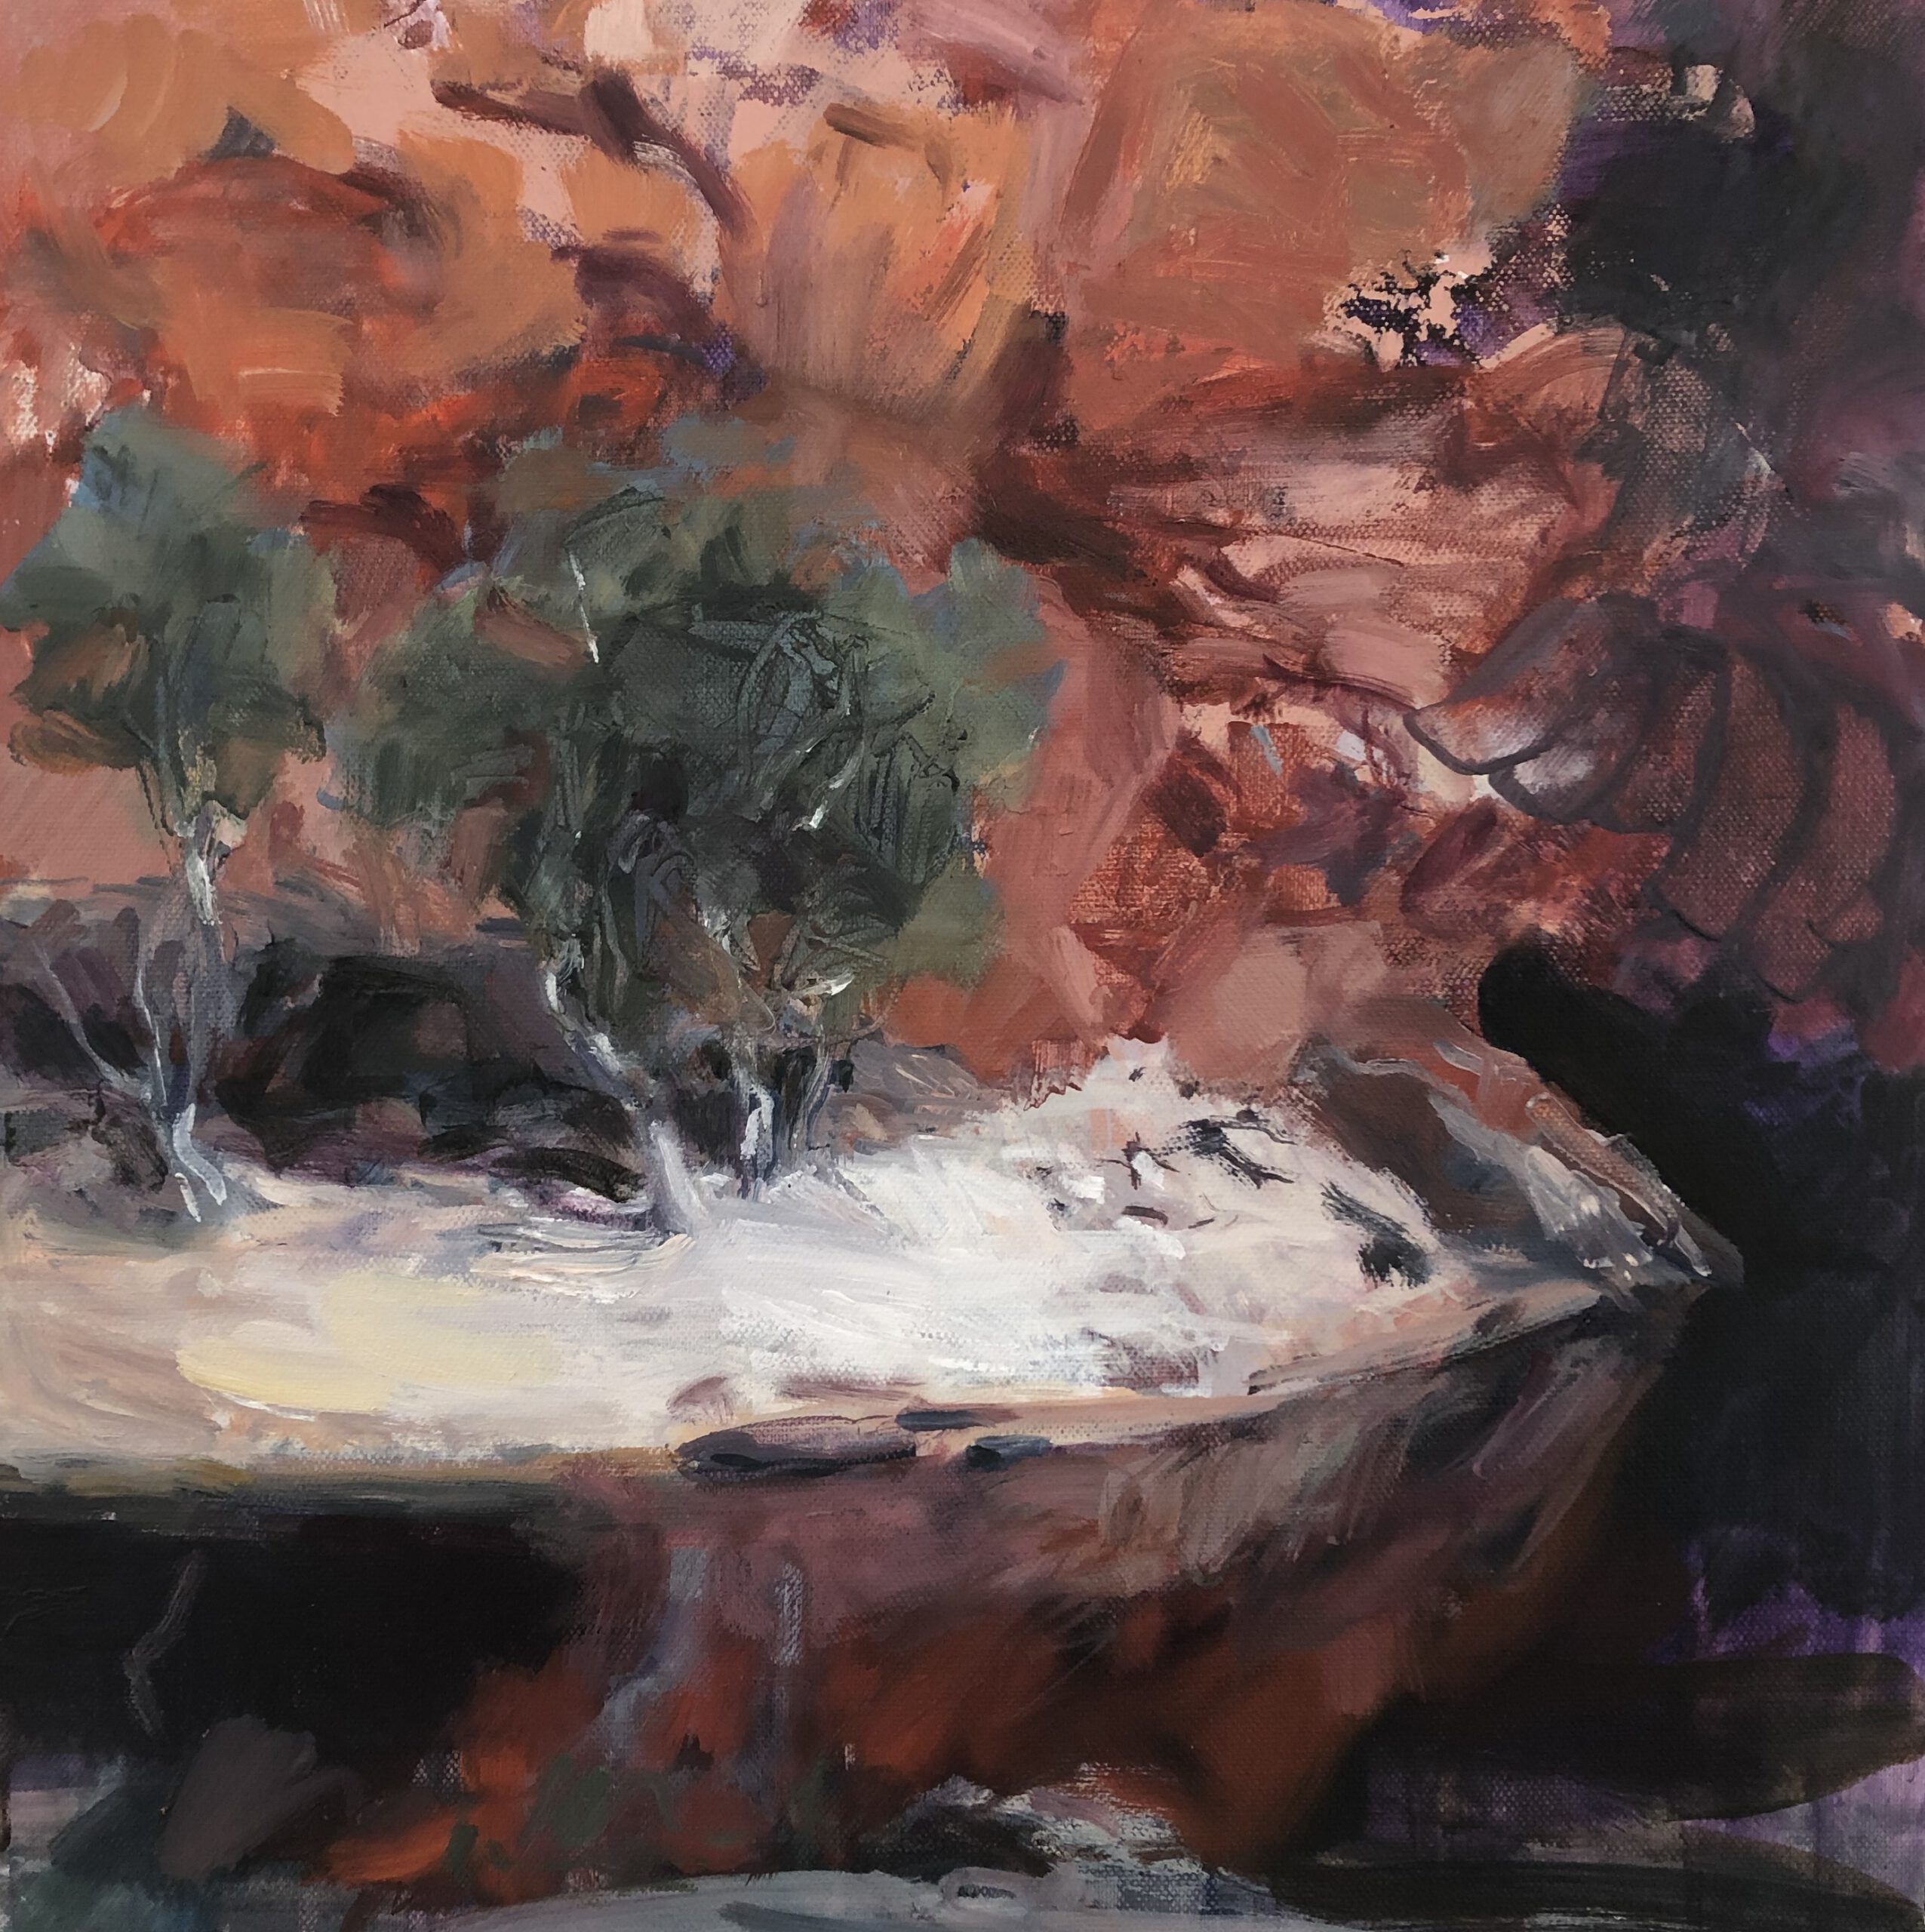 14 RockyCave, Oil on Canvas, 40x40cm, 2020